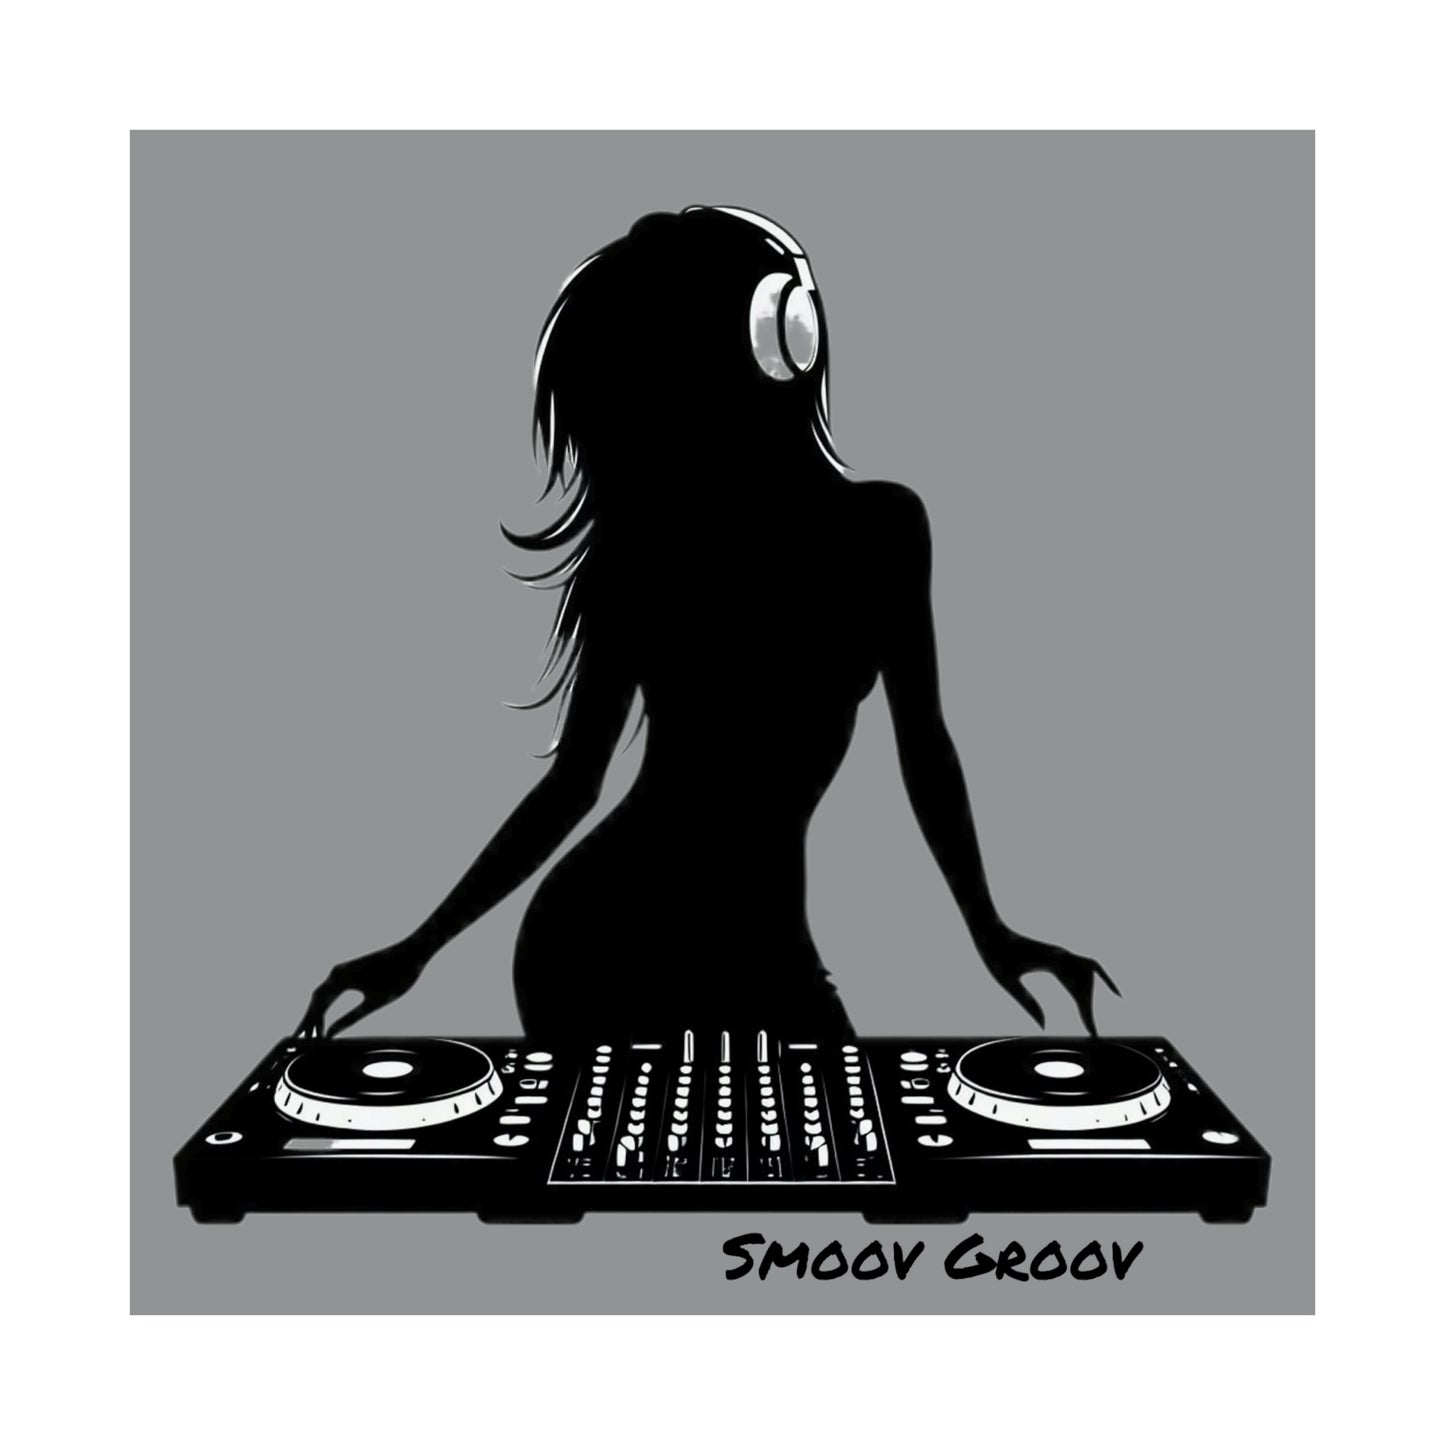 Smoov Girl Groov DJ in grey